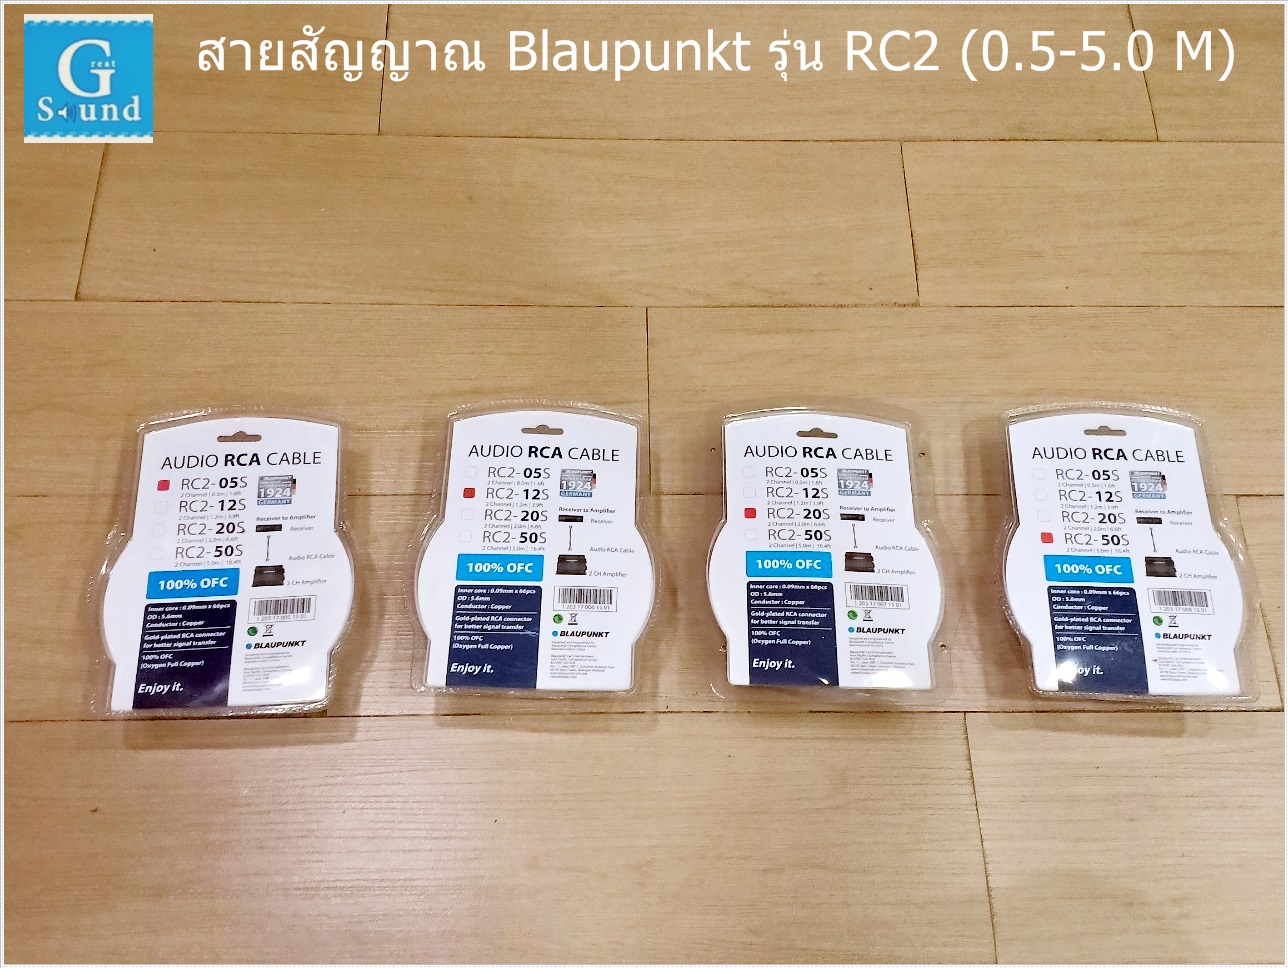 สายสัญญาณ BLAUPUNKT รุ่น RC2 (1.2 M) AUDIO RCA CABLE